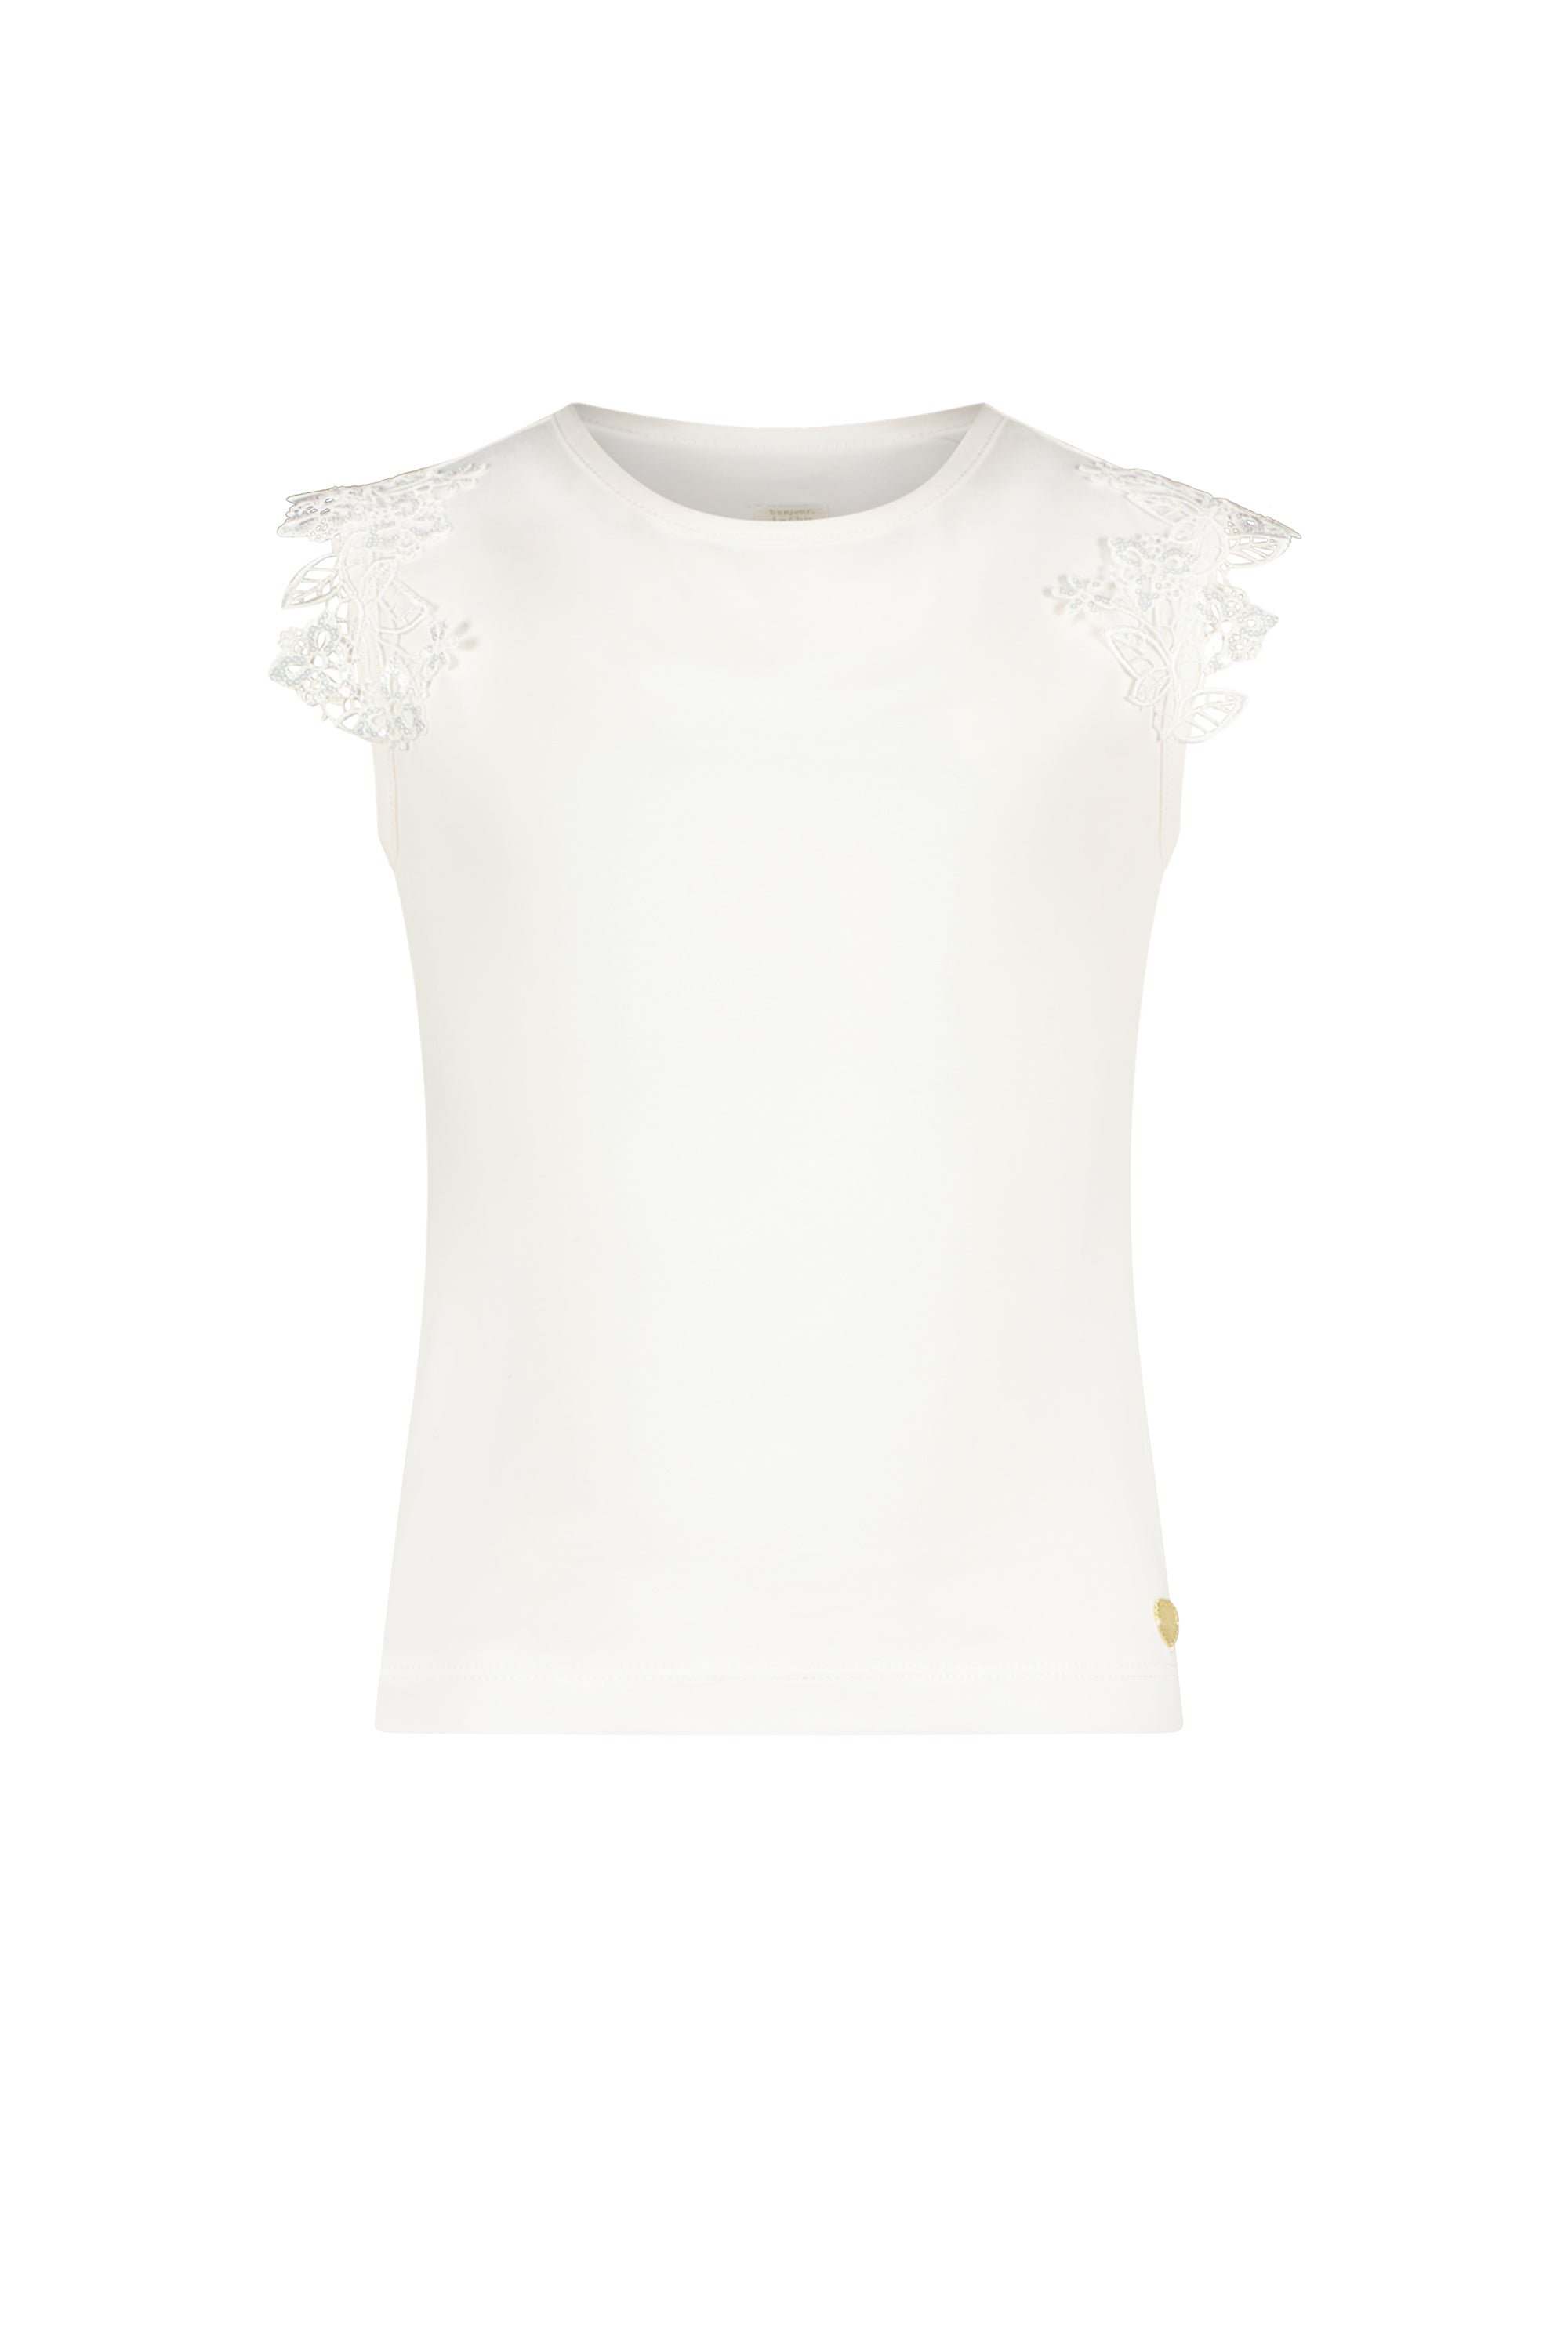 NOOSHY bloemen T-shirt Off white